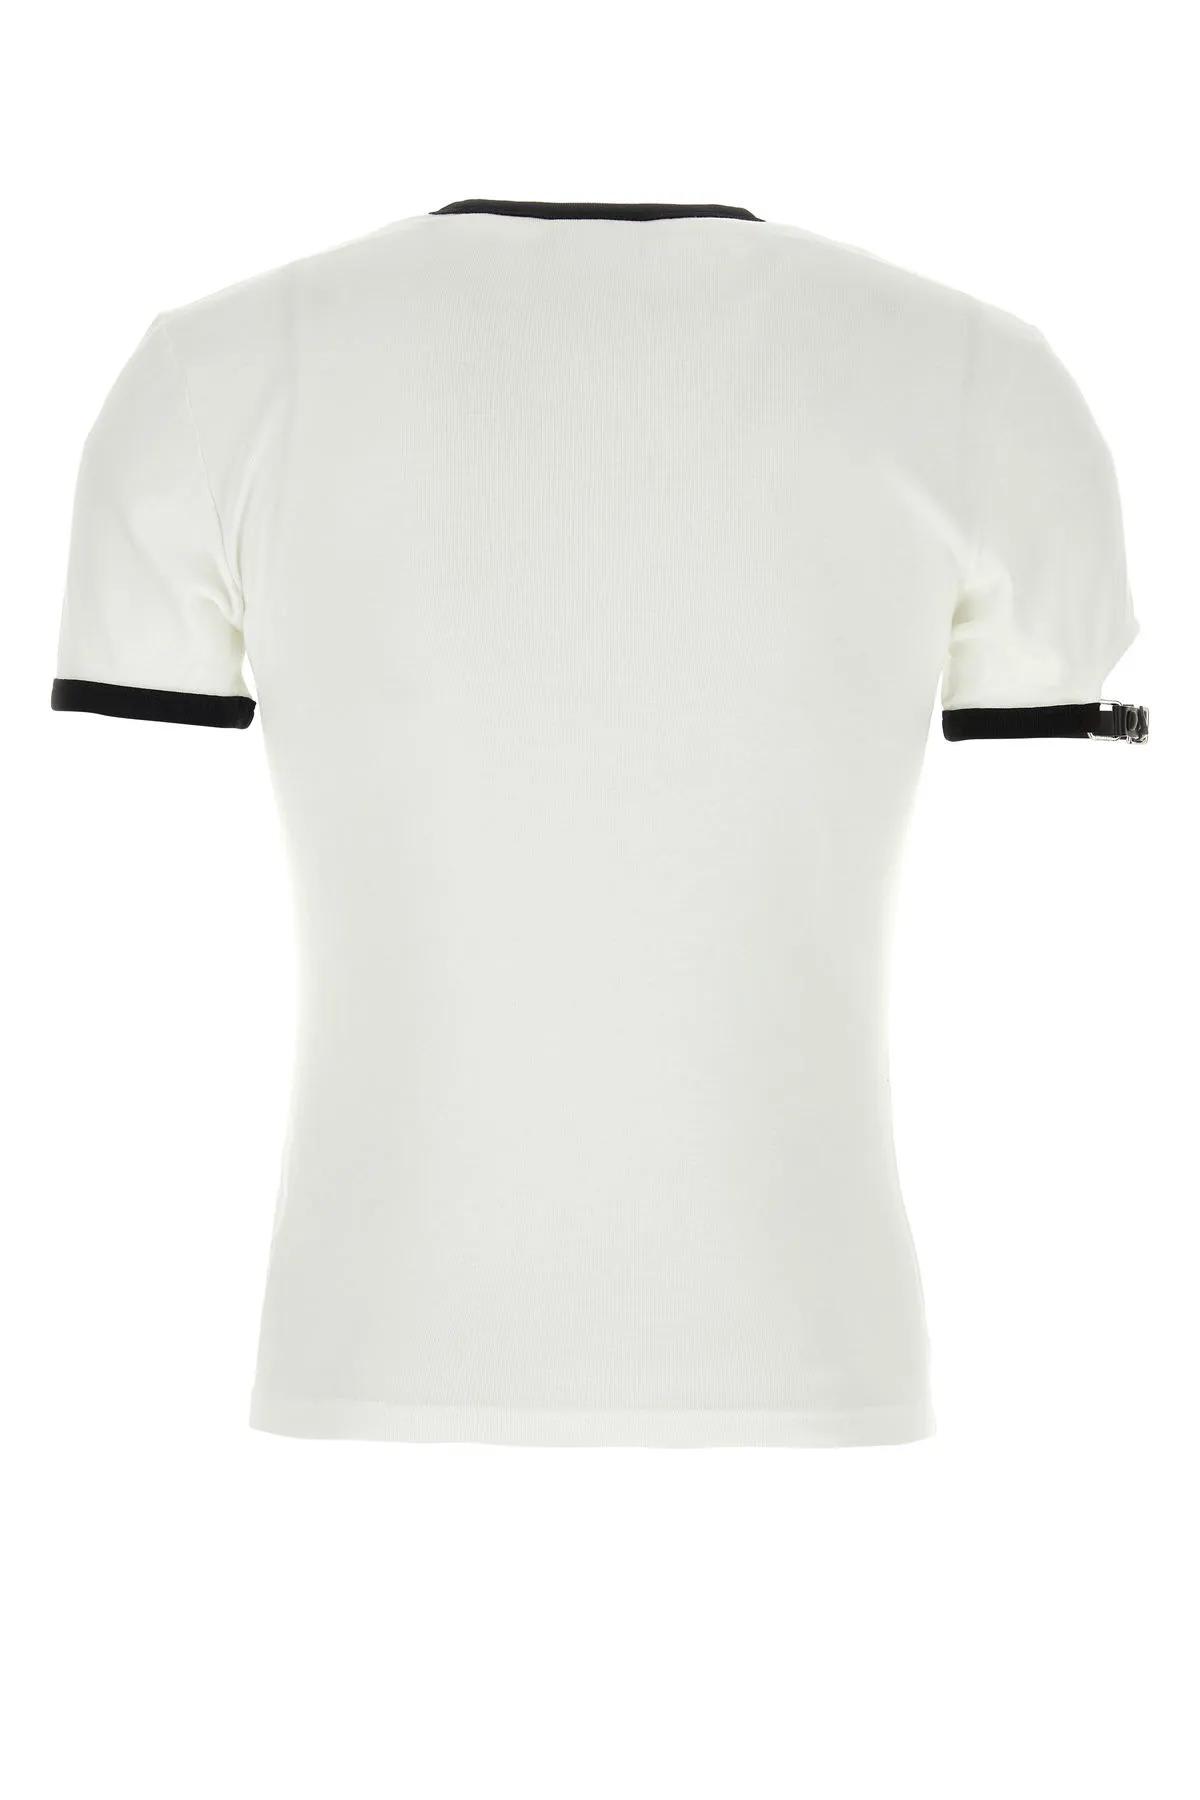 Shop Courrèges White Cotton T-shirt